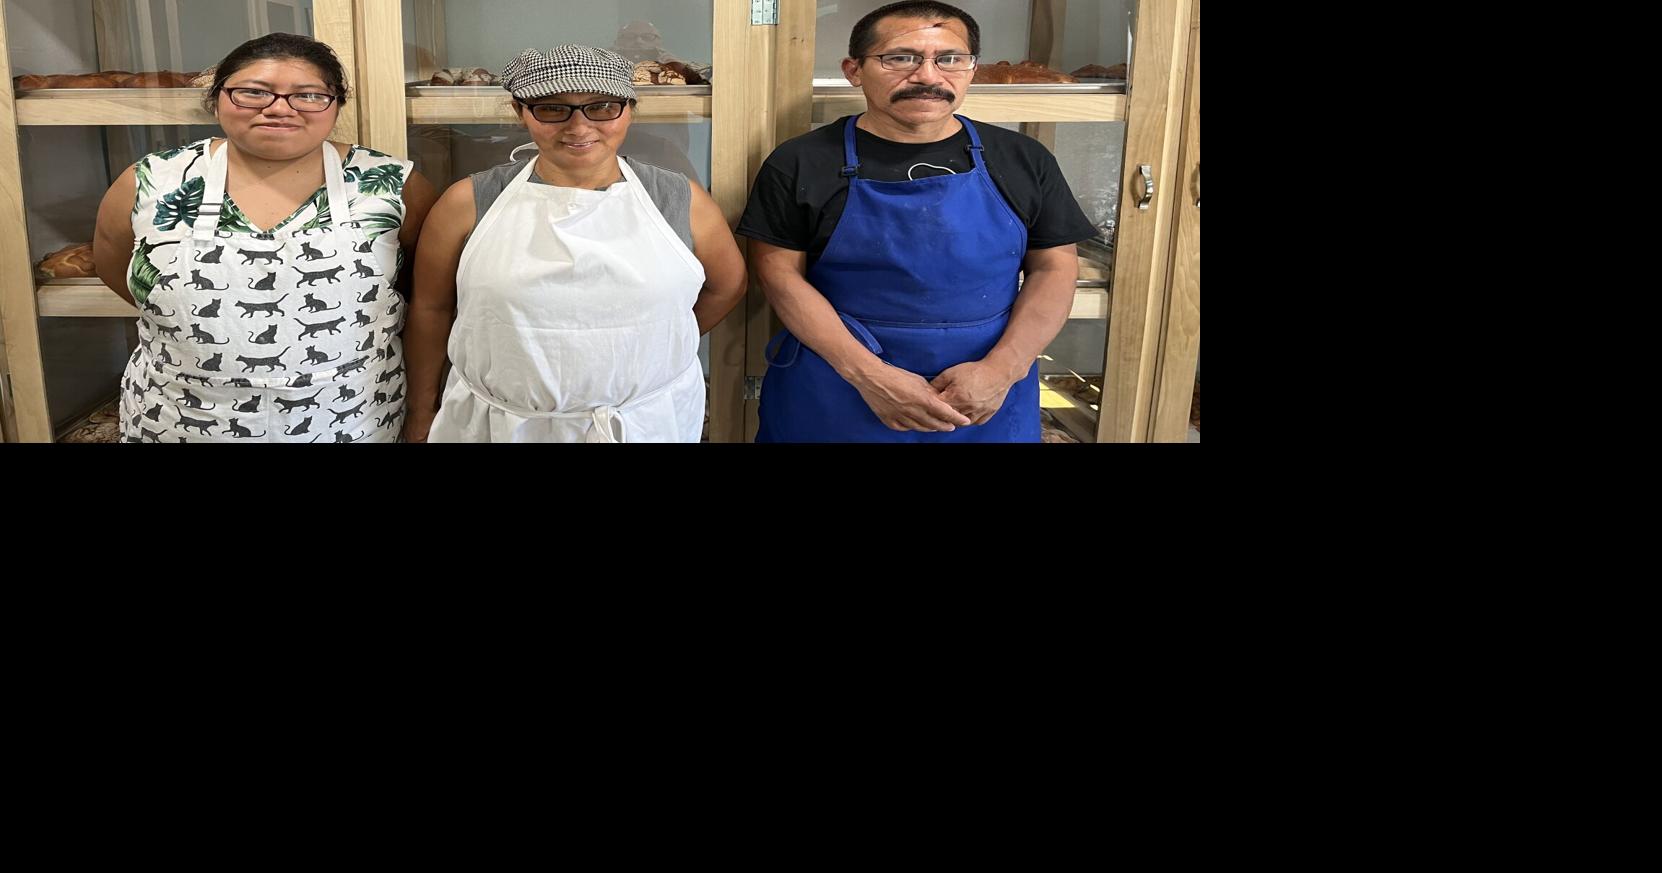 familia trae delicias mexicanas y guatemaltecas a la ciudad con Doña Conchita |  Noticias